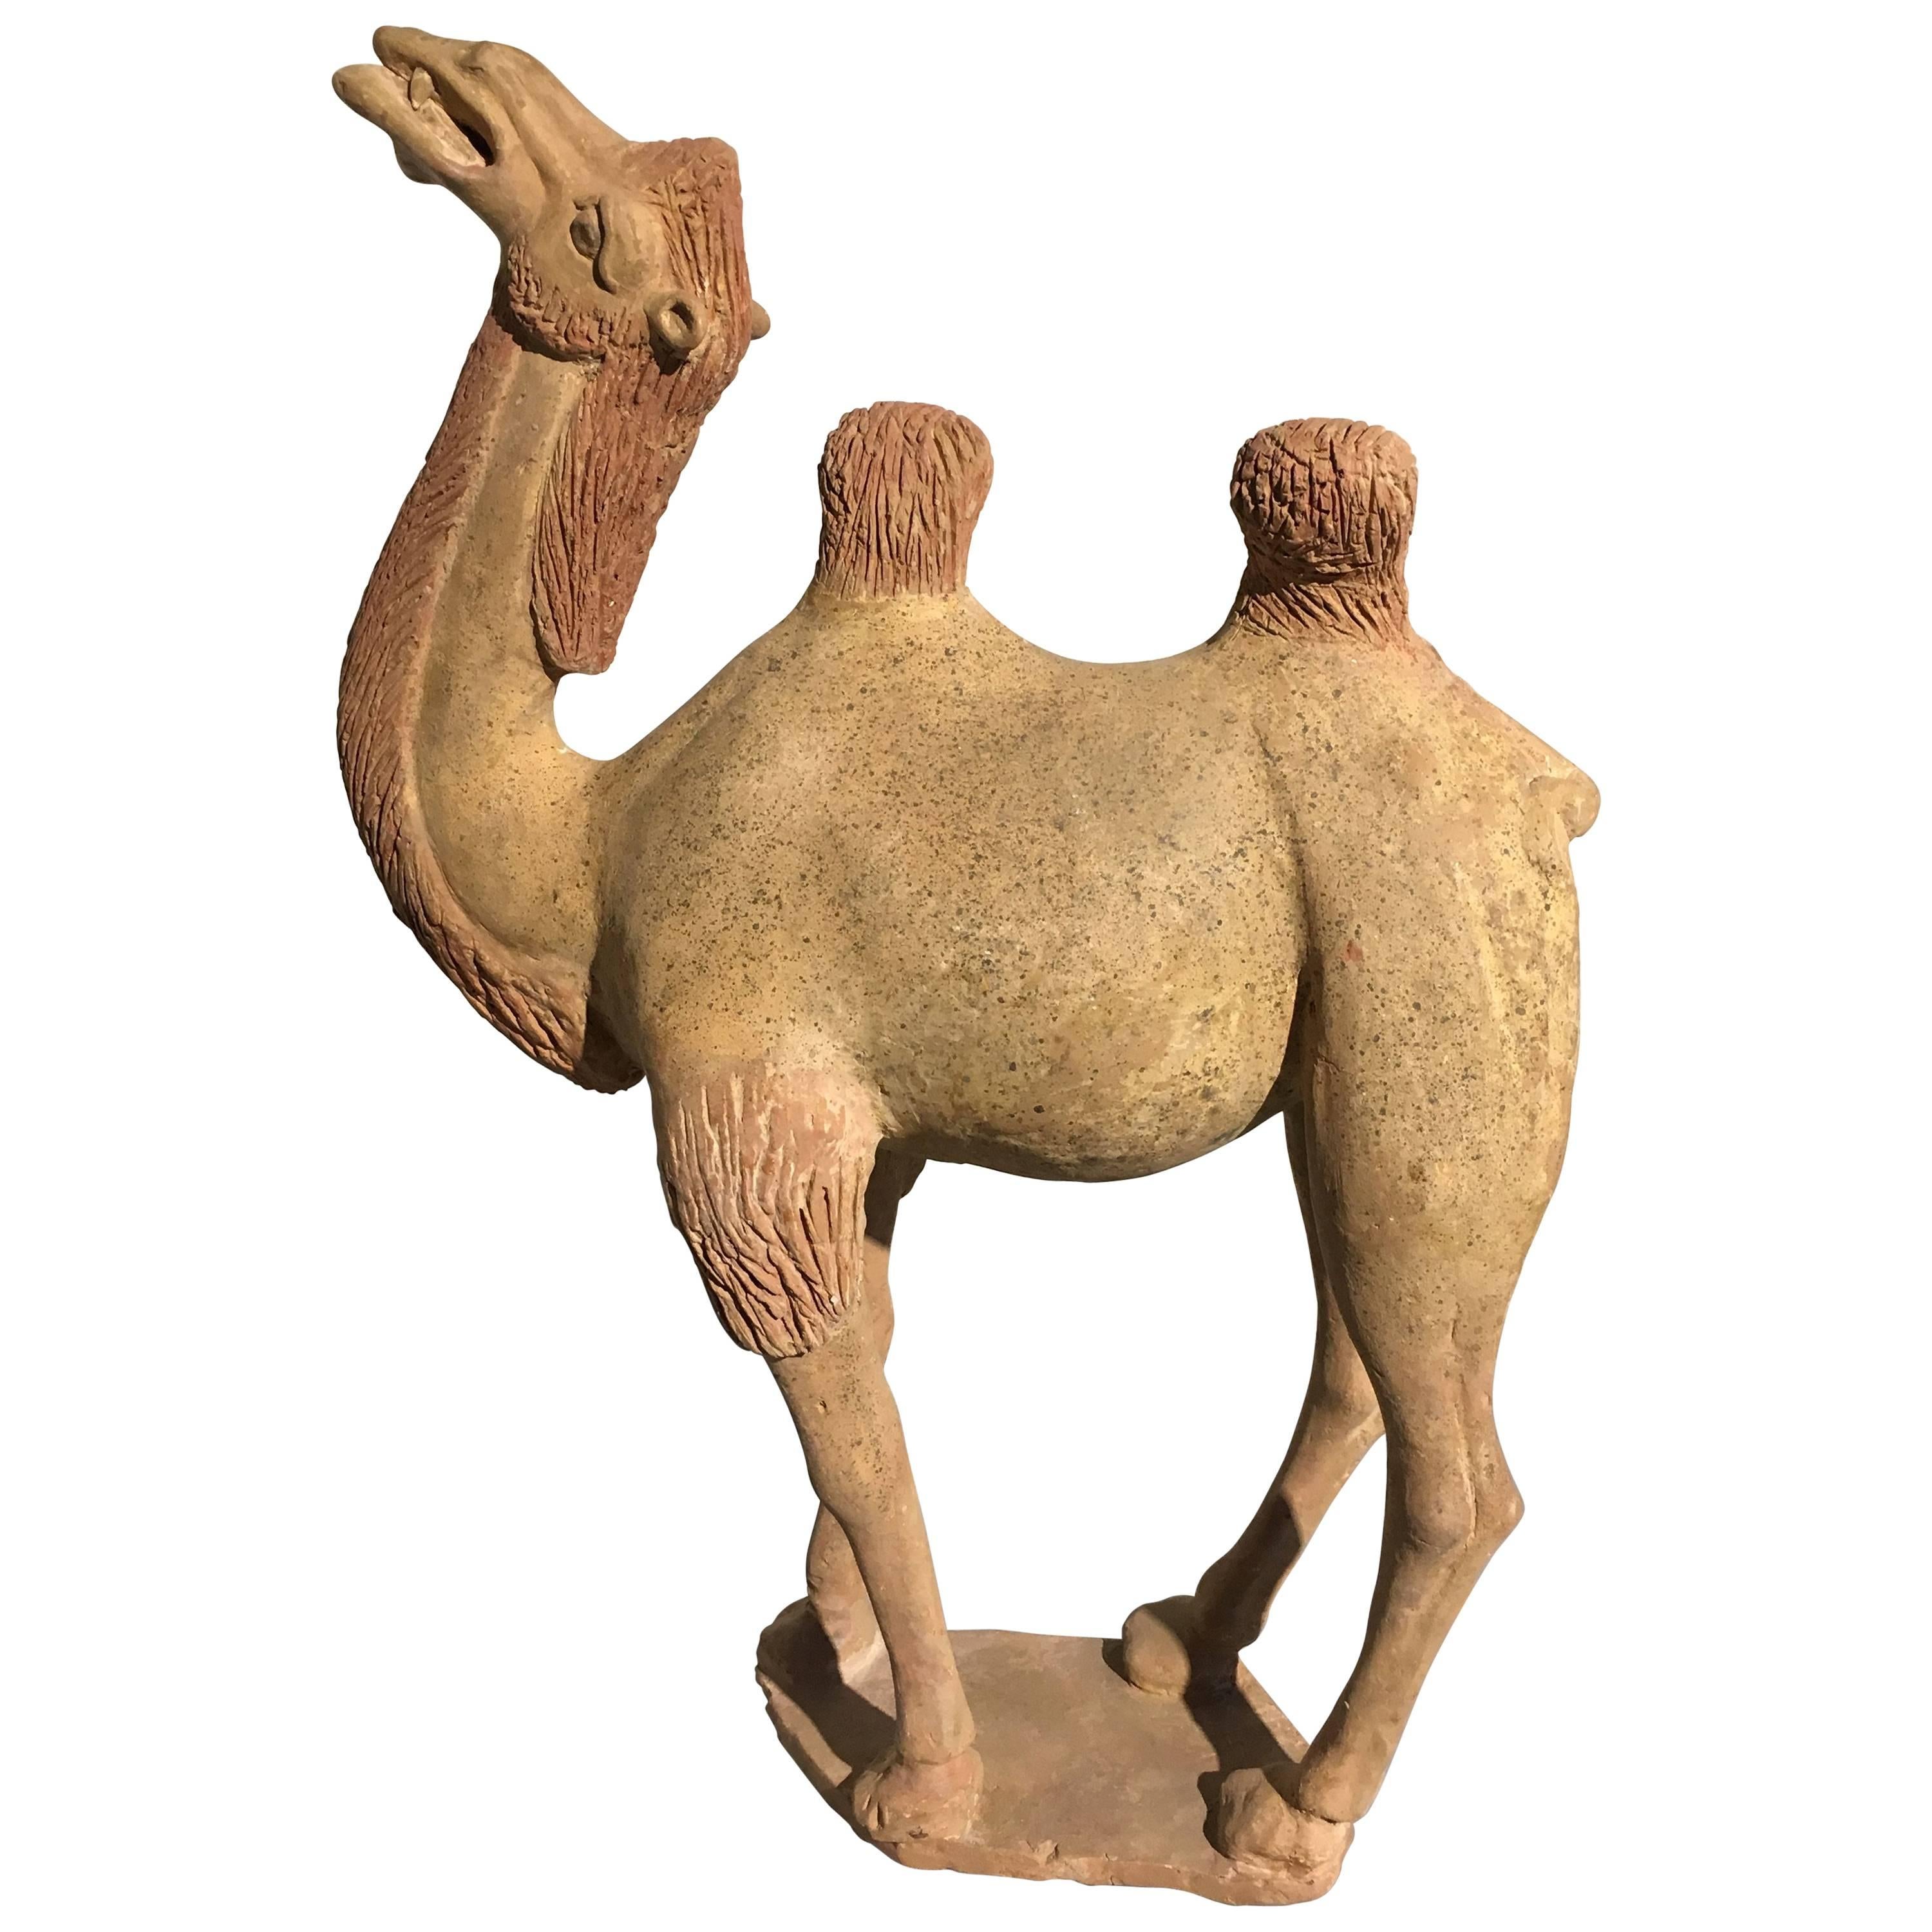 Chinesisches bemaltes Keramikmodell einer Kamelie aus der chinesischen Tang-Dynastie